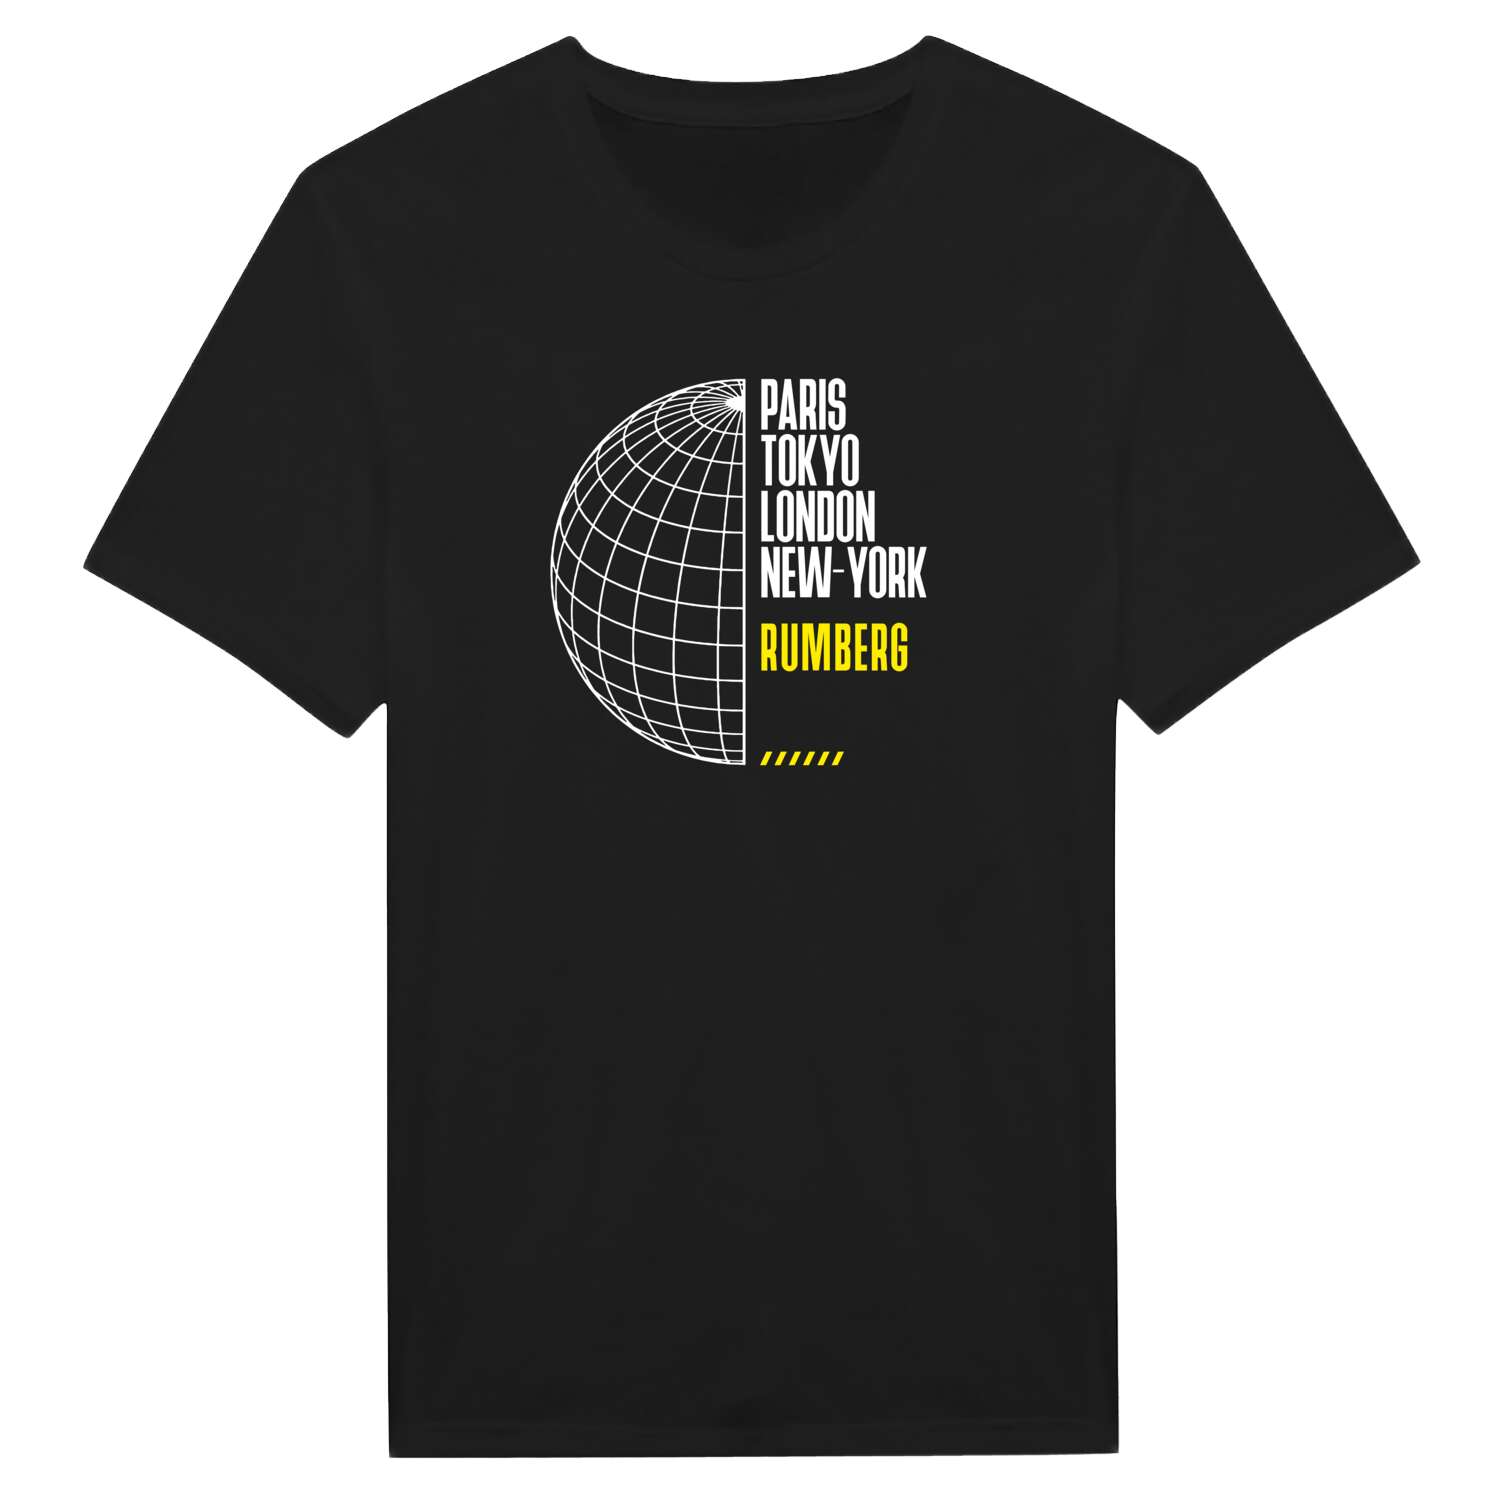 Rumberg T-Shirt »Paris Tokyo London«